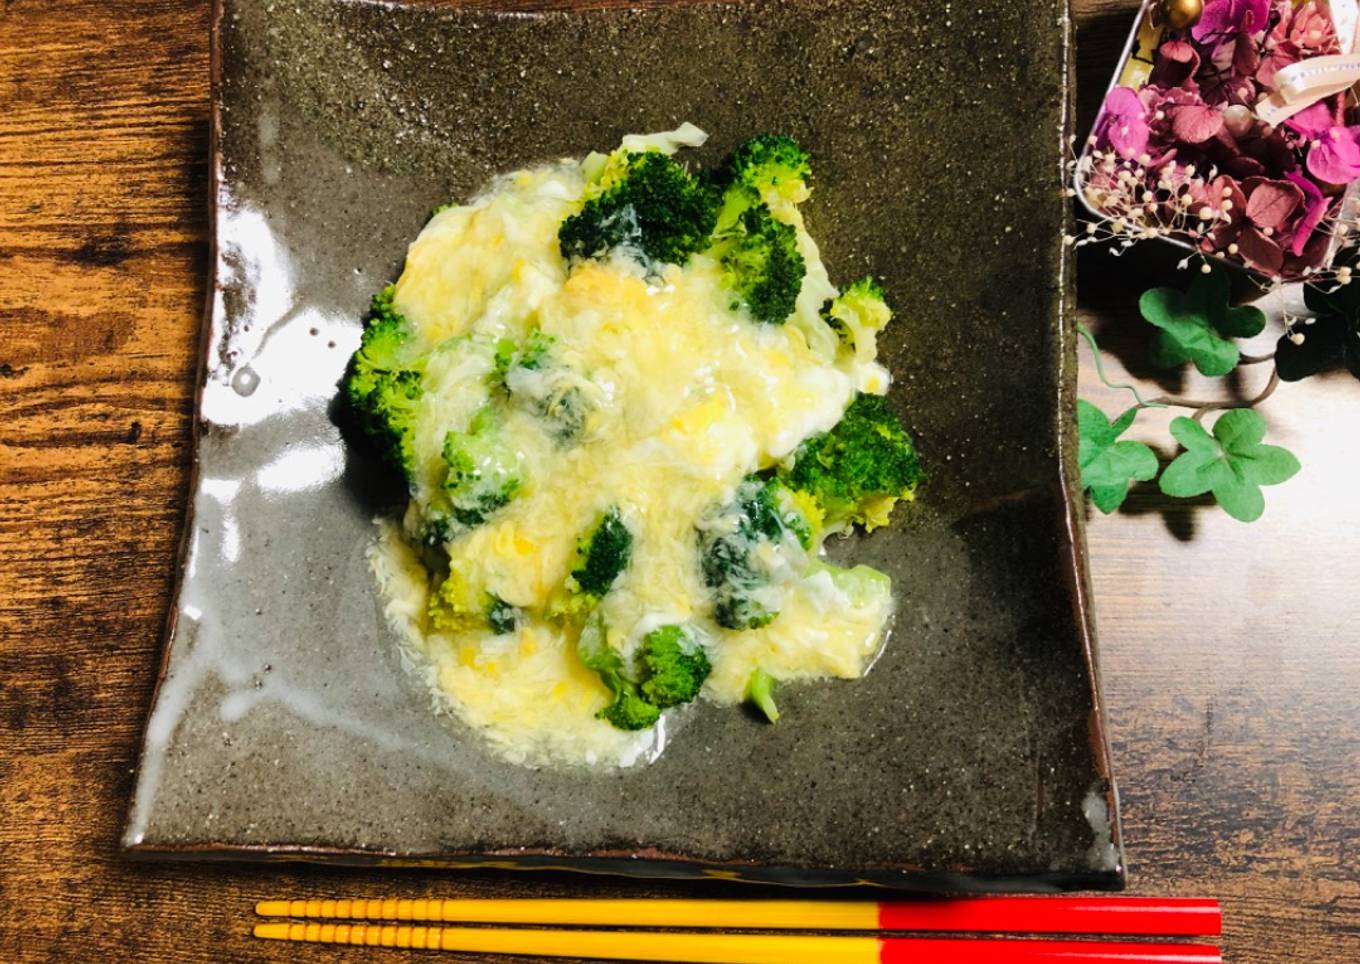 Broccoli with Egg sauce